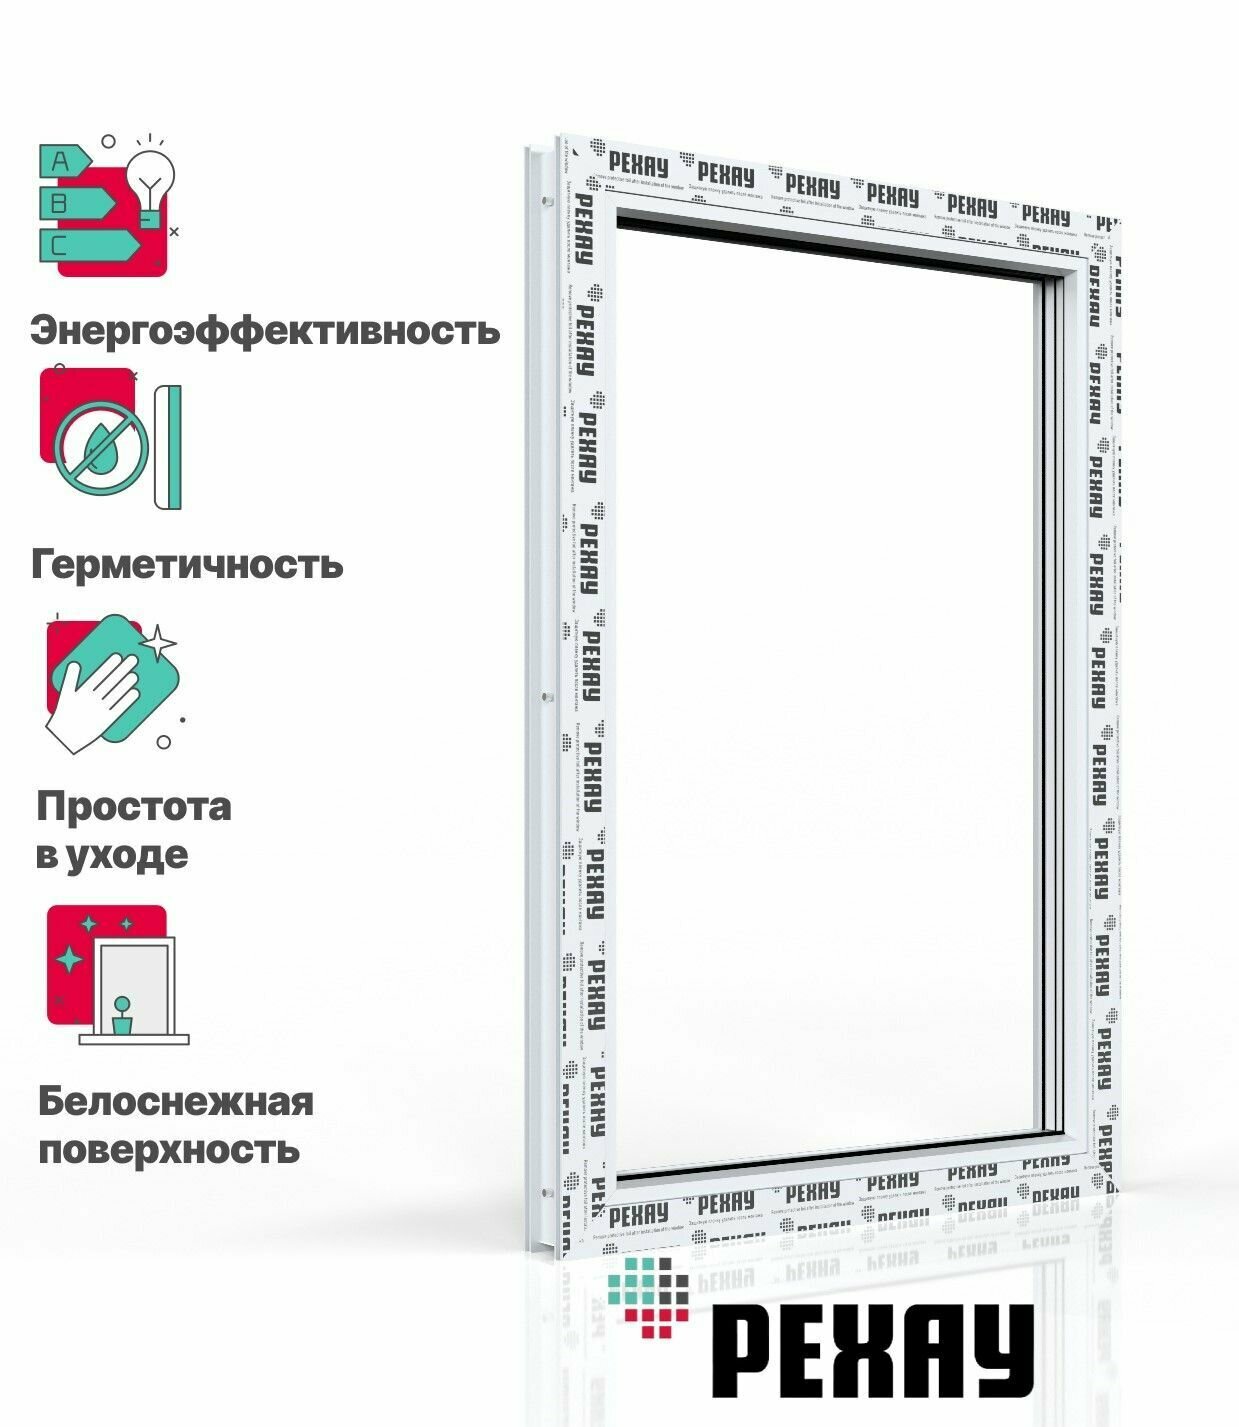 Пластиковое окно ПВХ РЕХАУ DELIGHT профиль 70 мм, 600х500 мм (ВхШ) с учетом подставочного профиля, одностворчатое, глухое, энергосберегаюший двухкамерный стеклопакет, белое